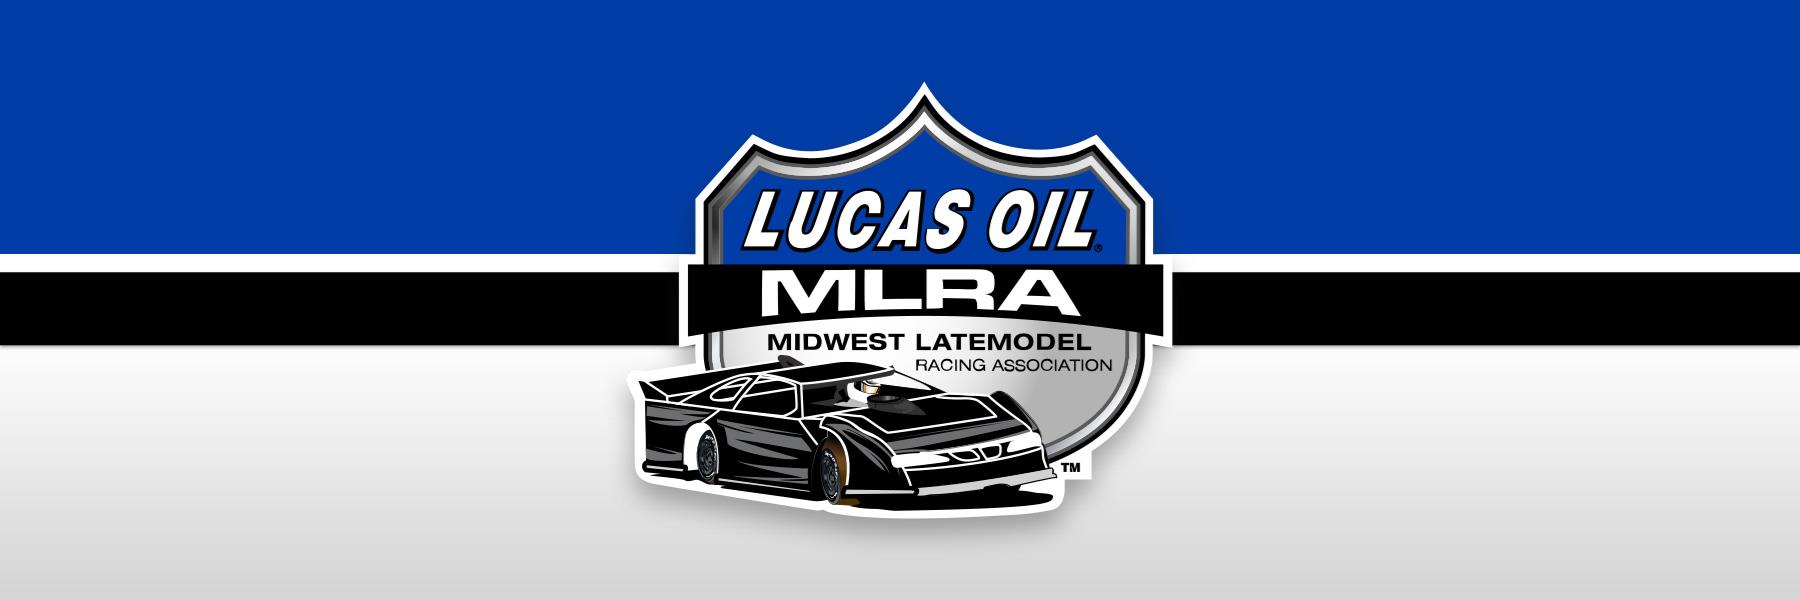 Lucas Oil MLRA